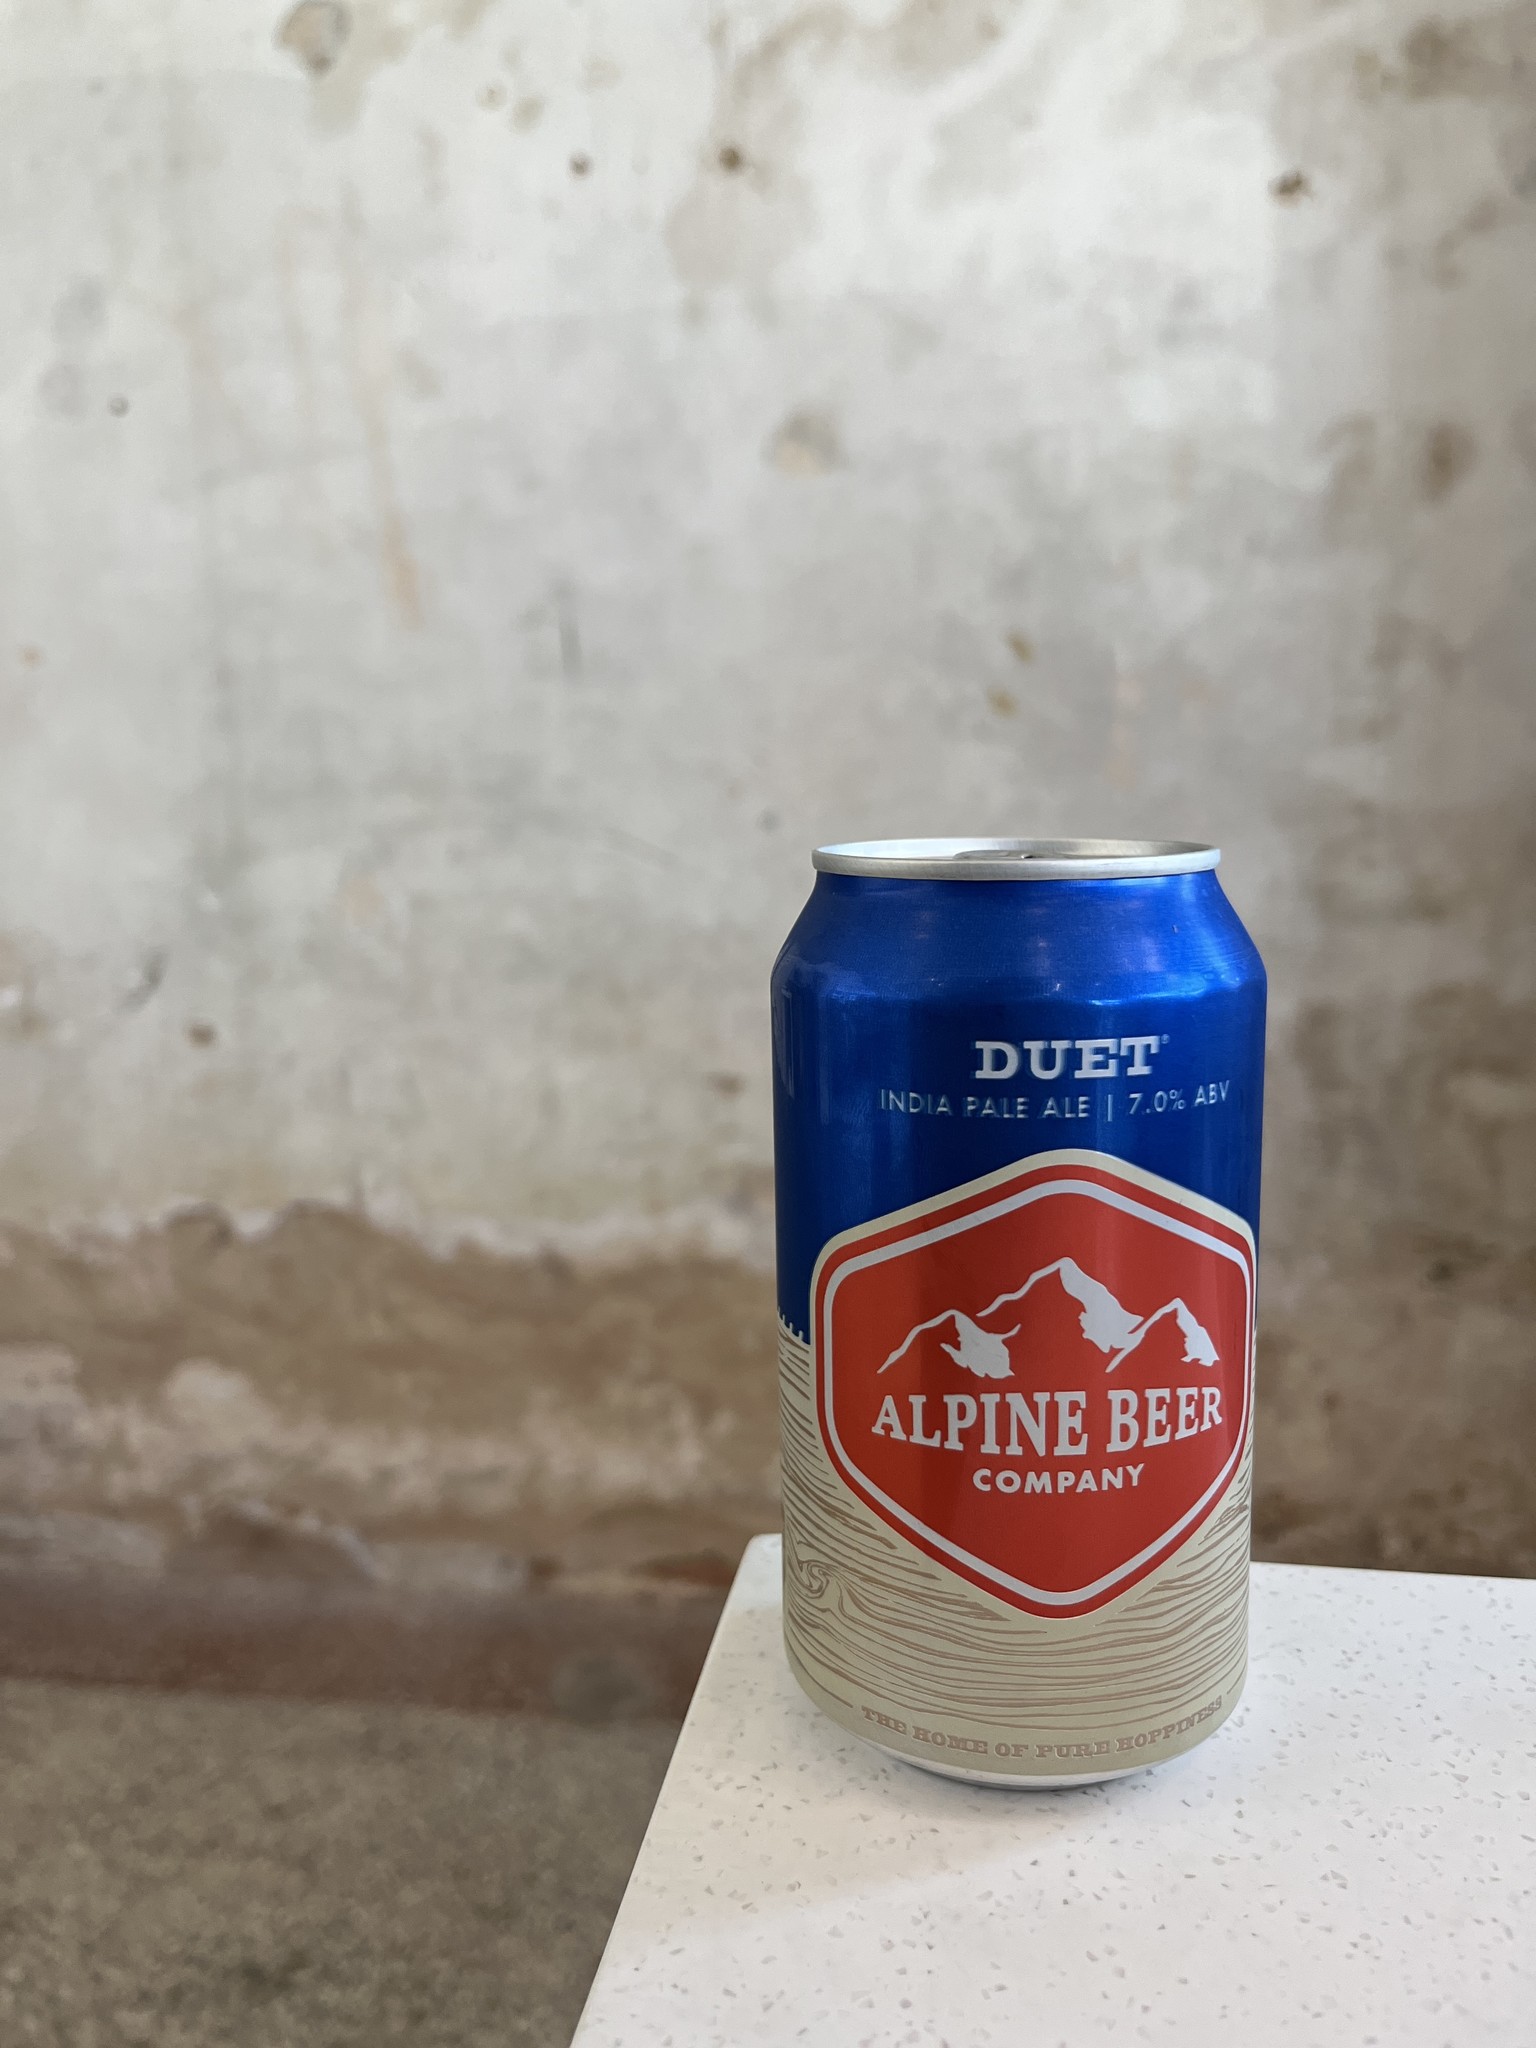 Alpine Beer Co. Duet IPA 12oz.